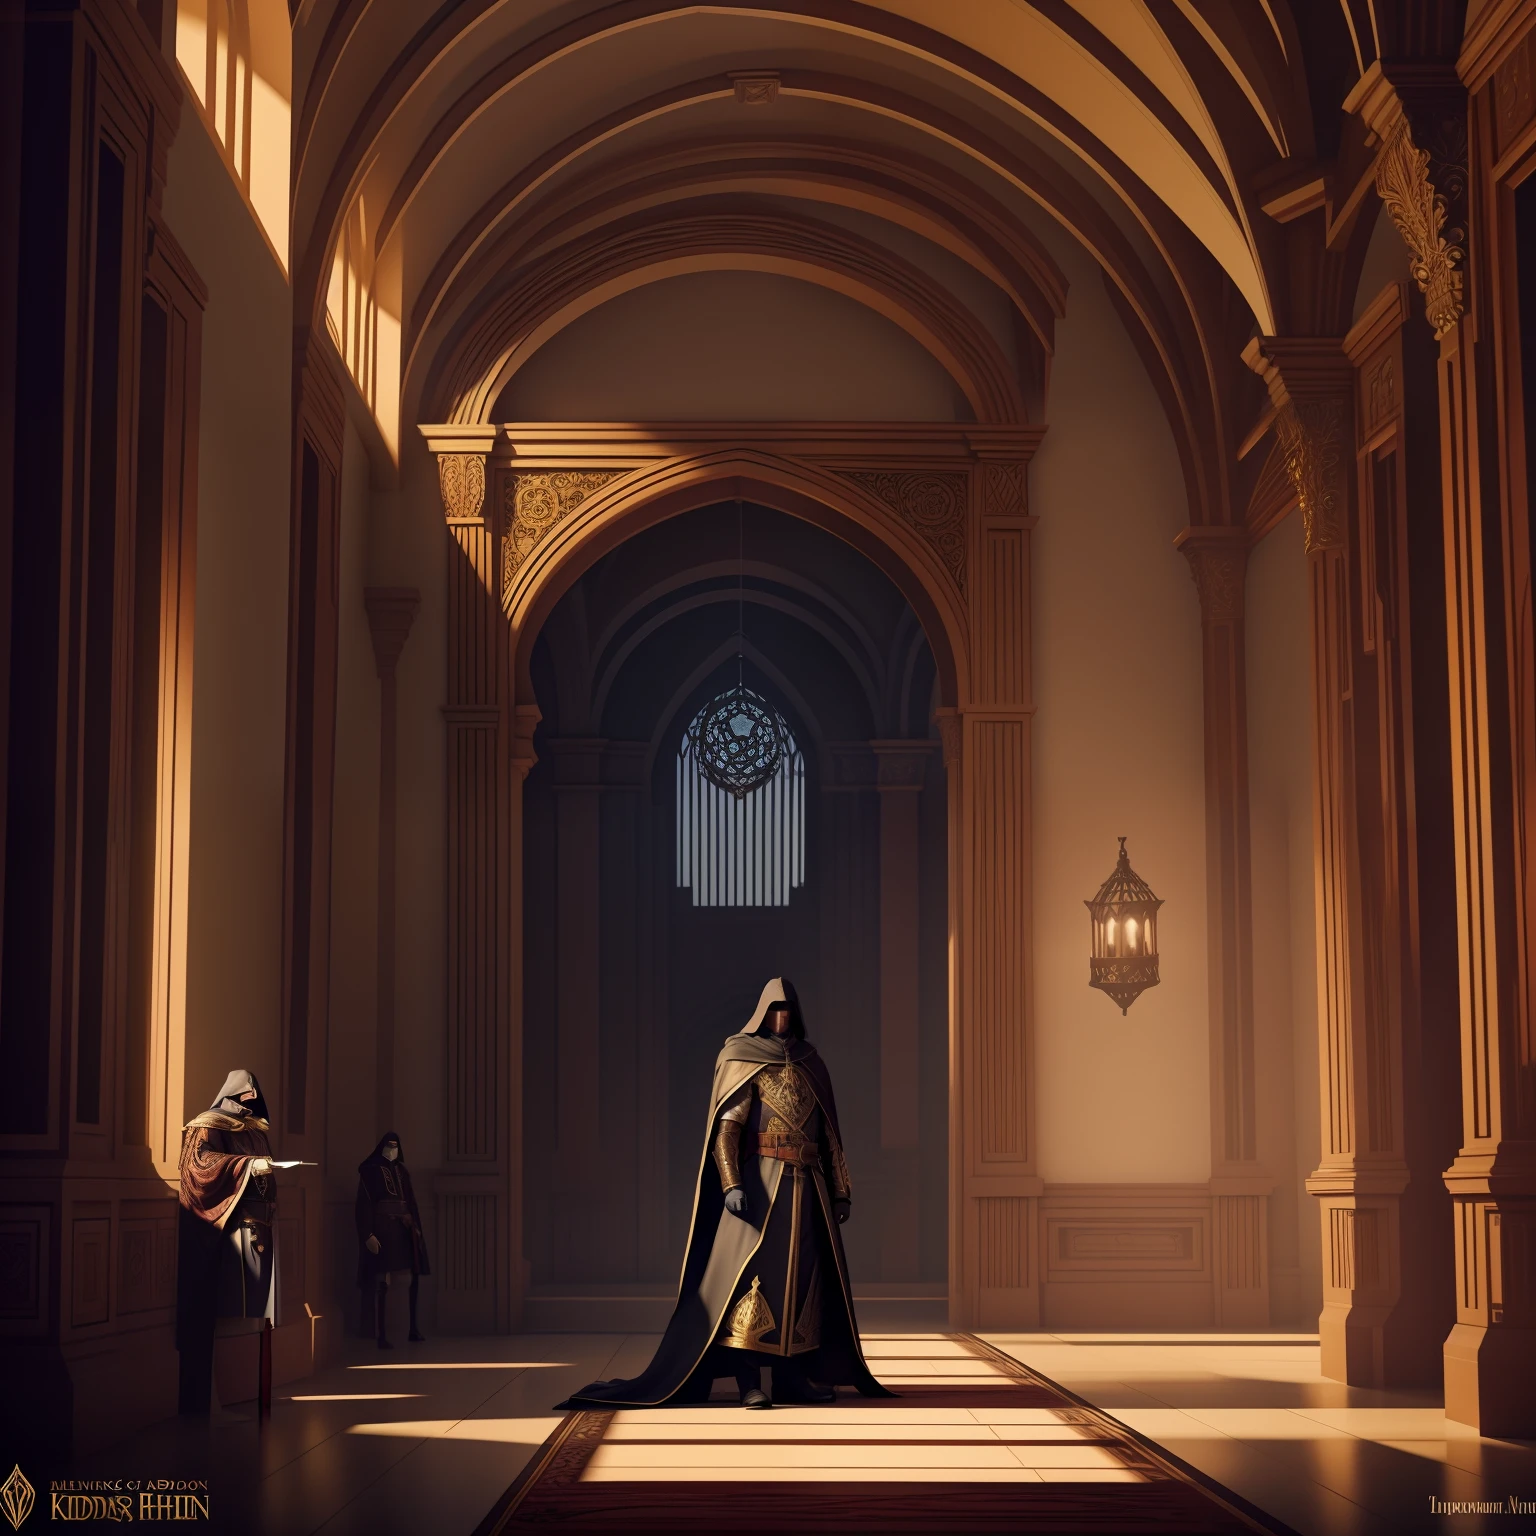 มีที่ปรึกษาของกษัตริย์สวมหน้ากากอยู่ข้างๆ เขาในเงามืดในห้องโถงที่สวยงาม, คอนเซปต์อาร์ตสไตล์ดราม่า